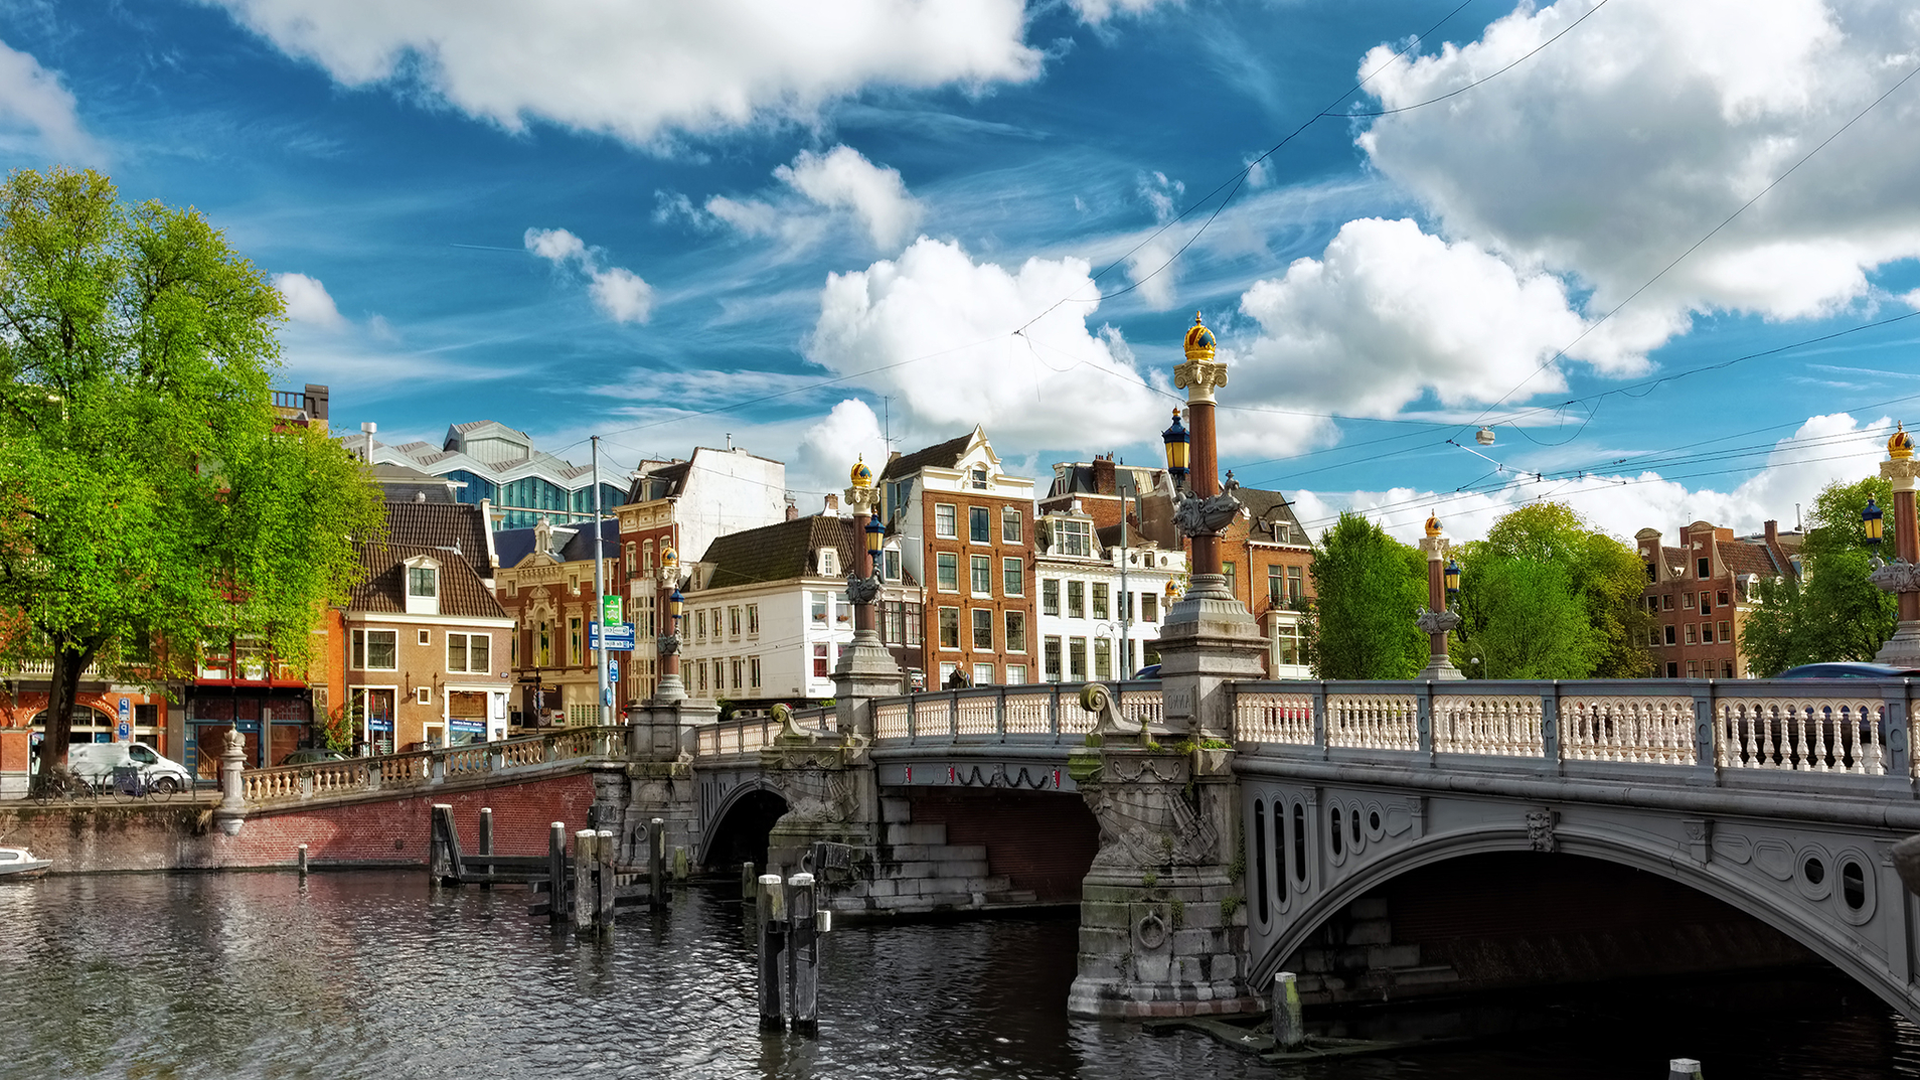 Bridge in the Netherlands